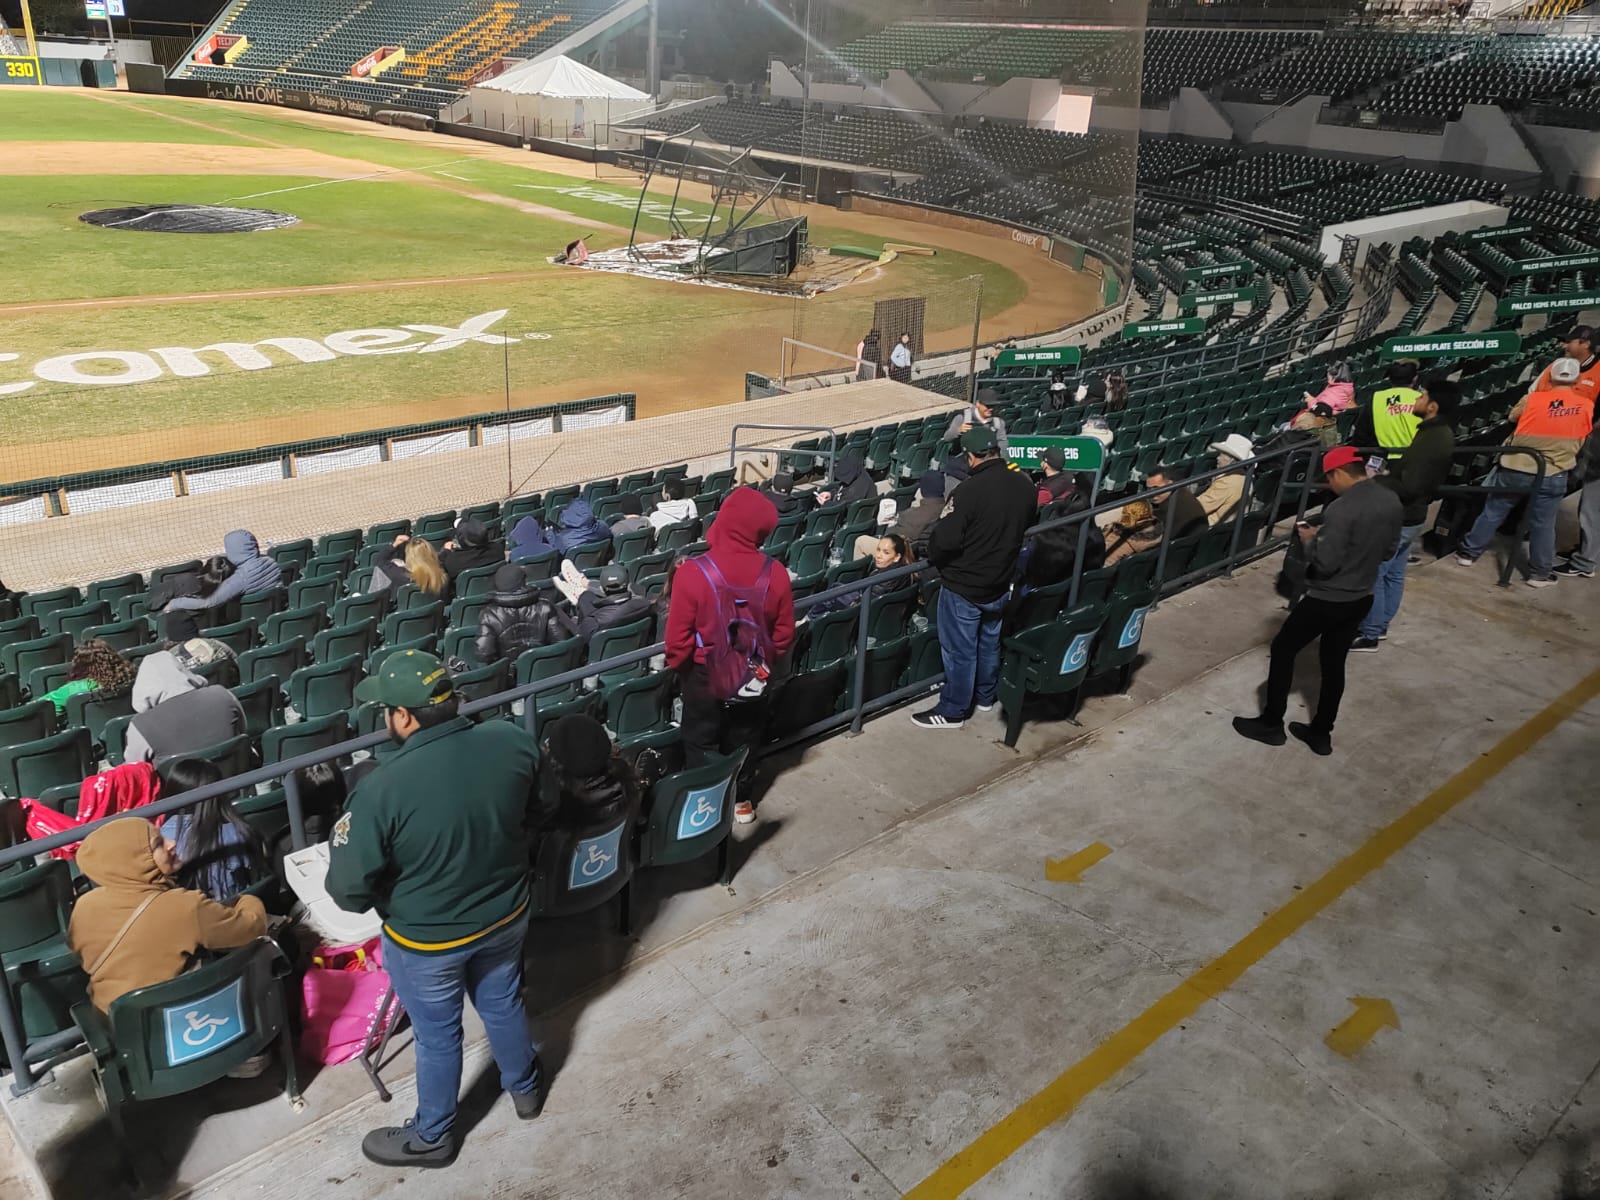 Poca asistencia registra el Chevron Park en tercer partido de beisbol entre Cañeros y Algodoneros